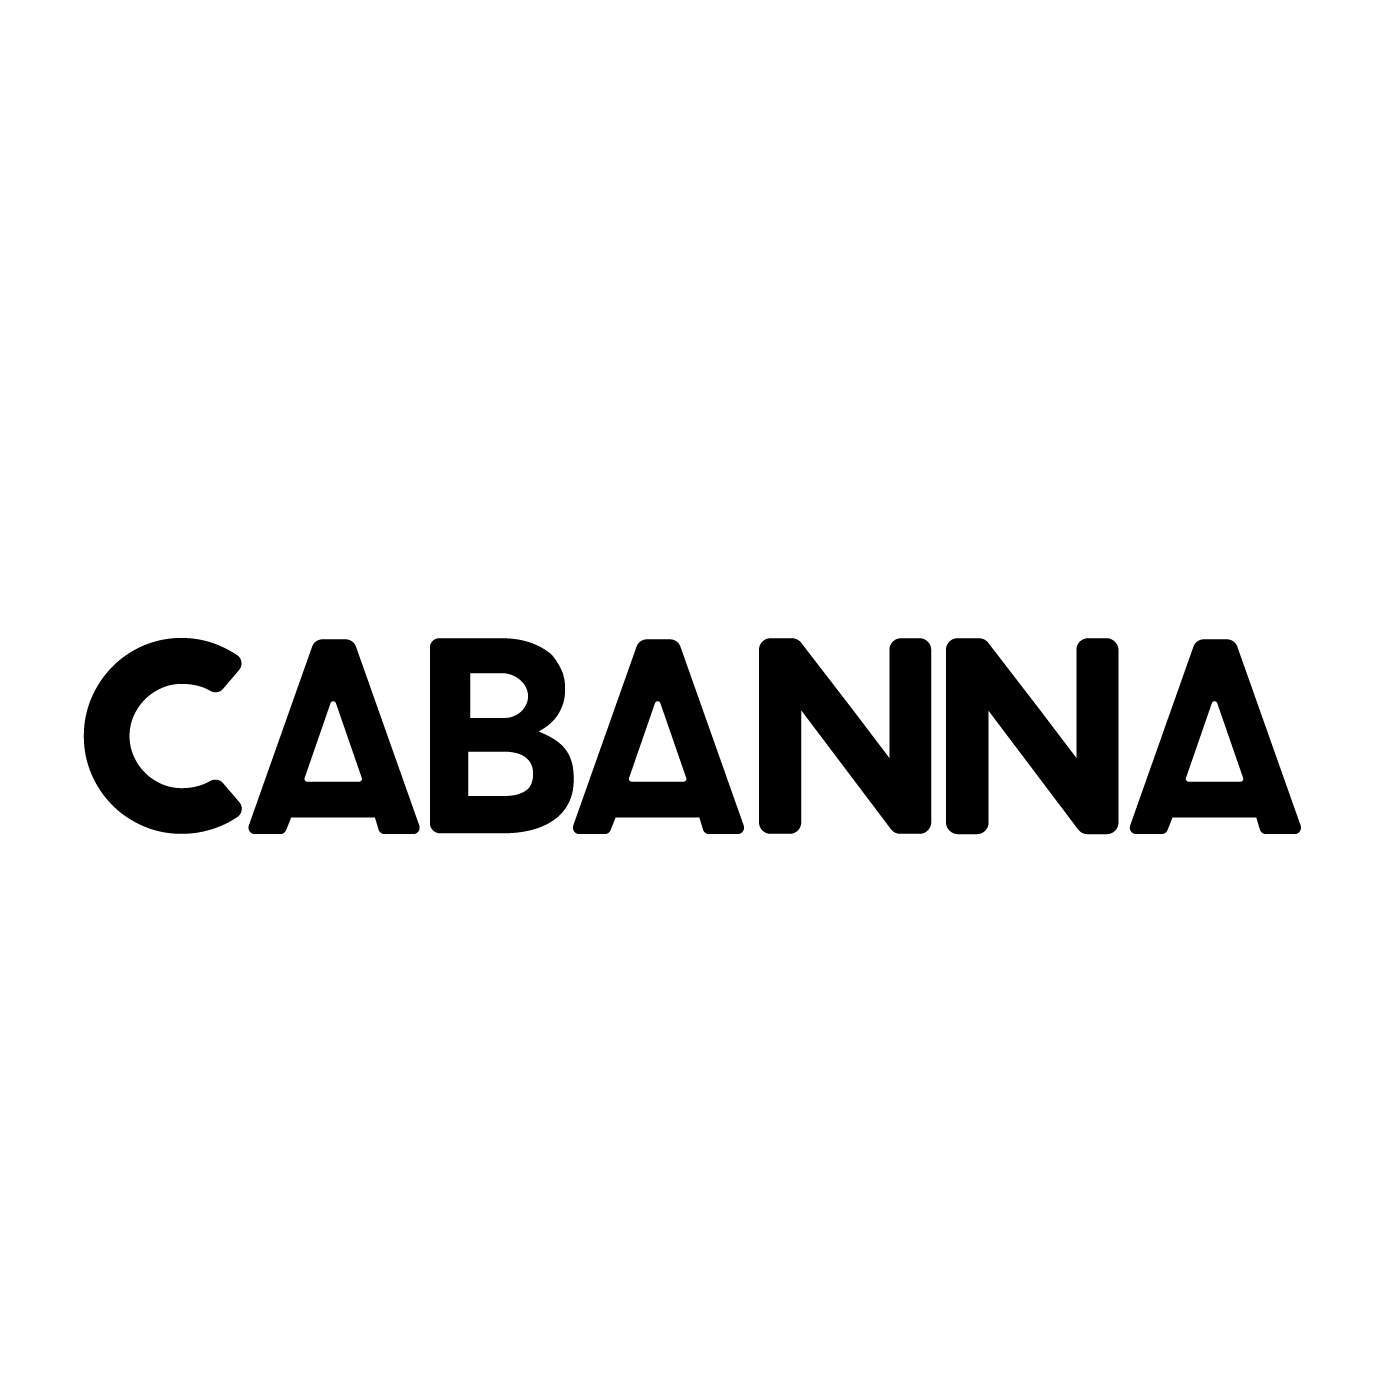 Cabanna